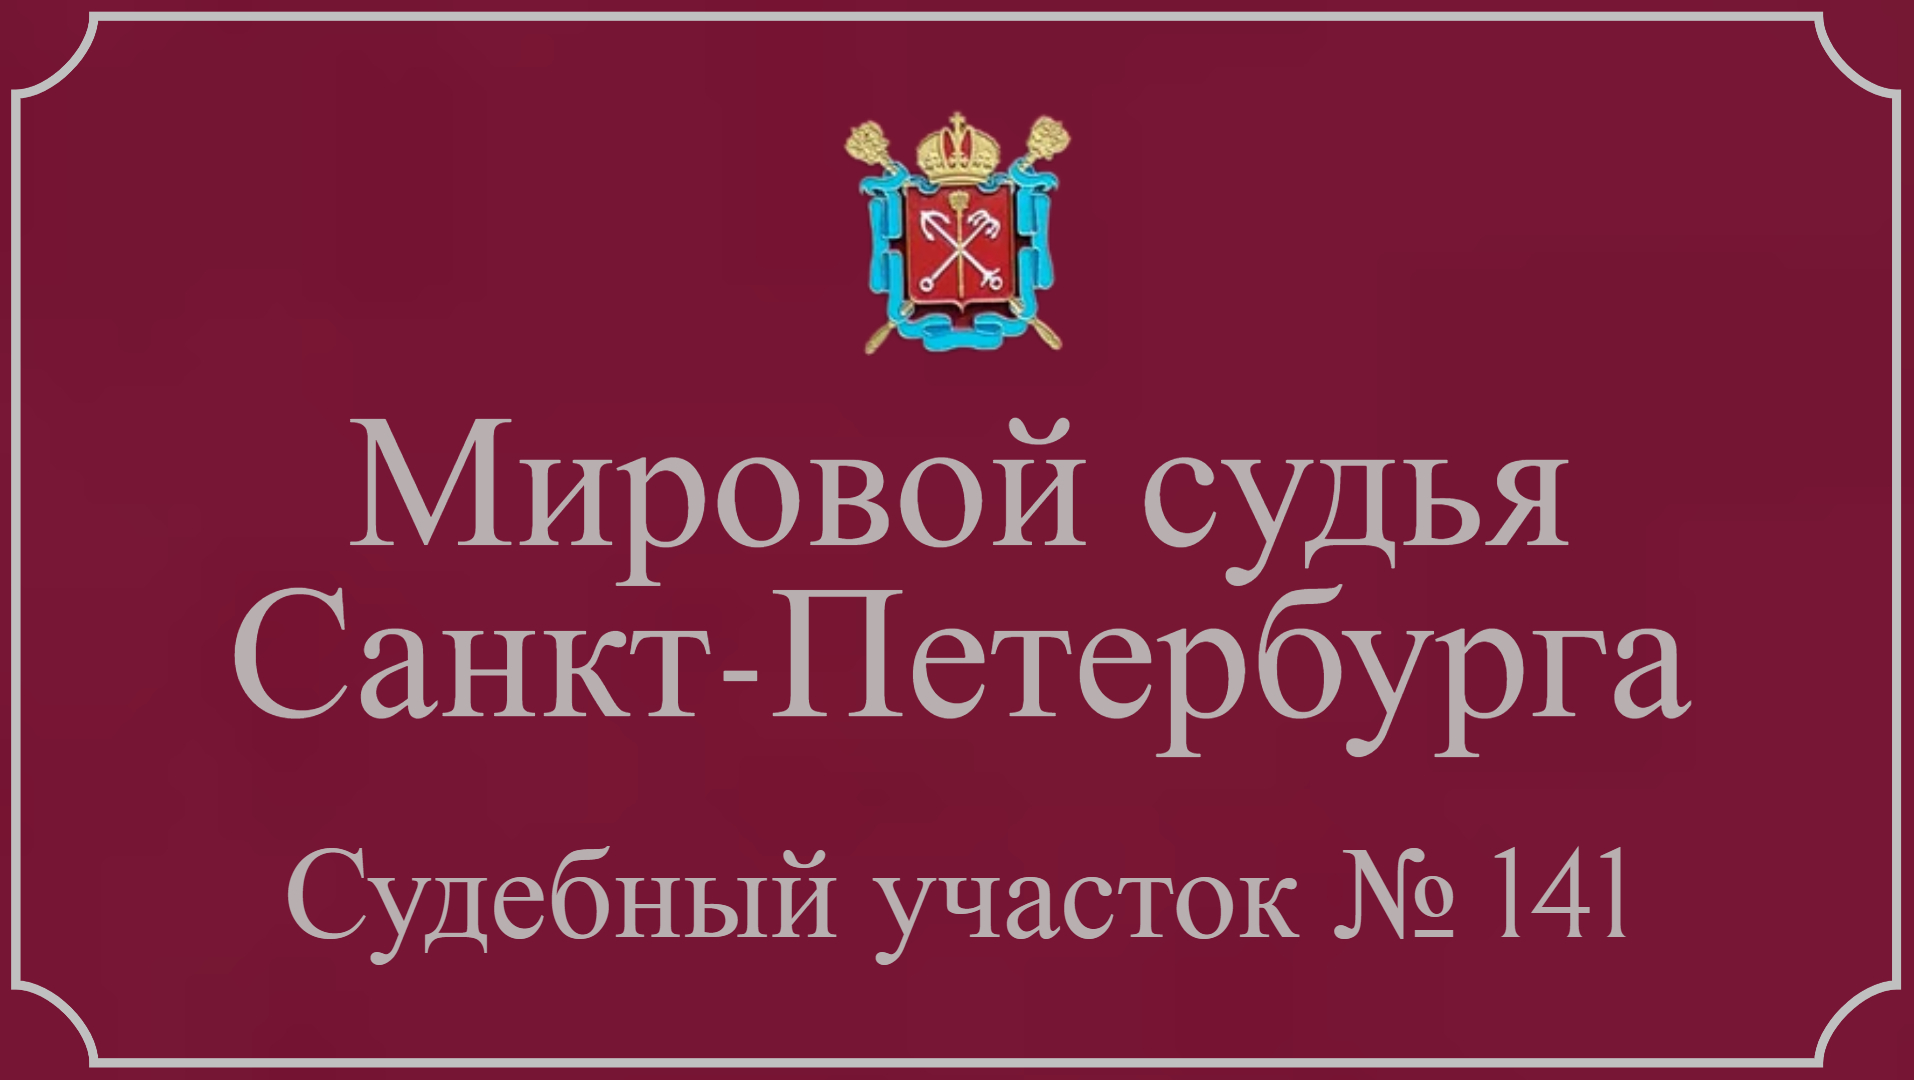 Информация по 141 судебному участку в Санкт-Петербурге.